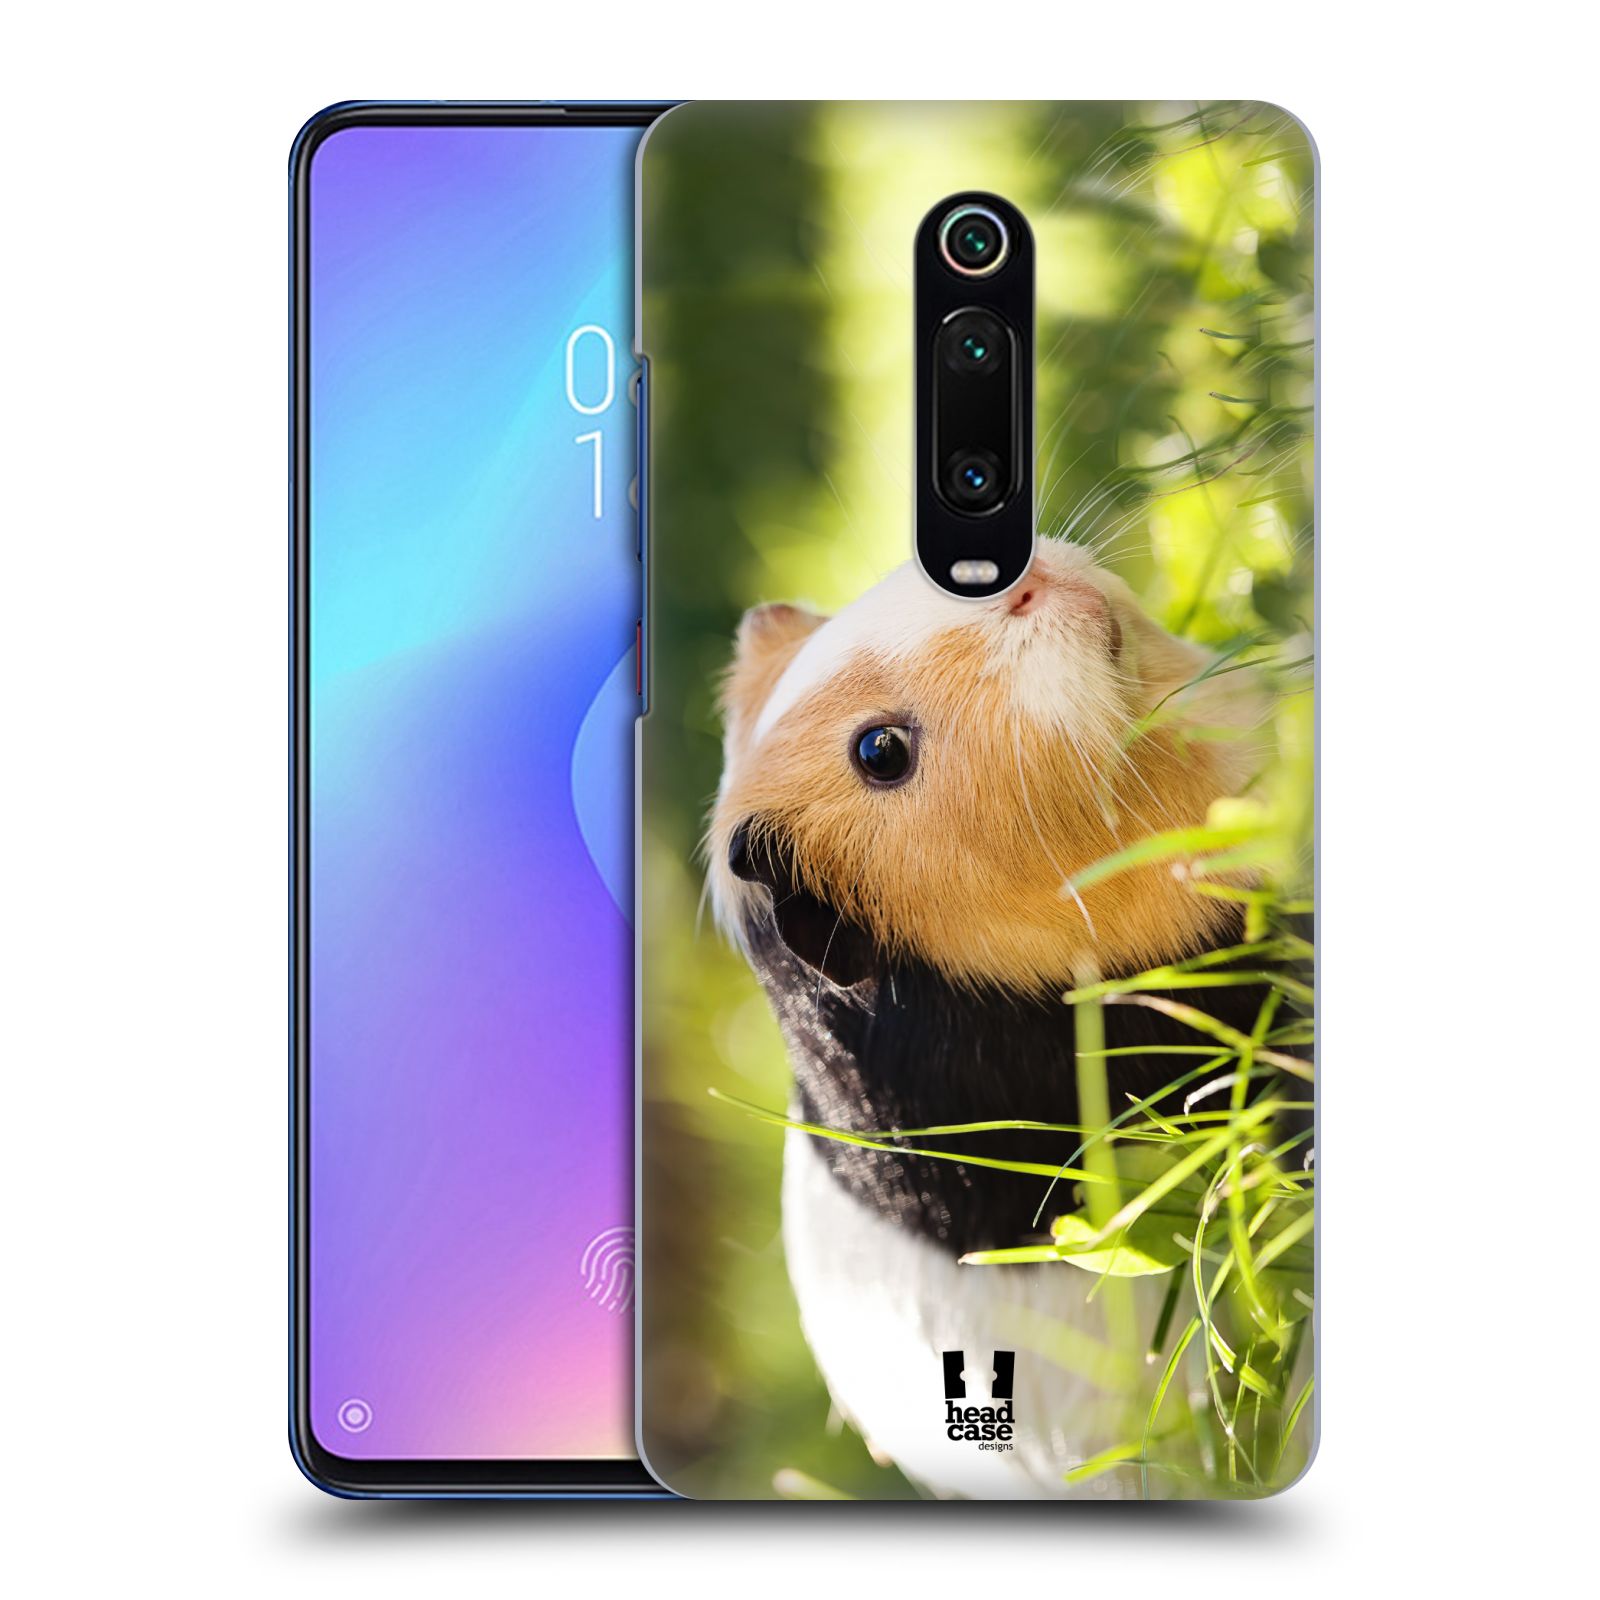 Pouzdro na mobil Xiaomi Mi 9T PRO - HEAD CASE - vzor slavná zvířata foto morče